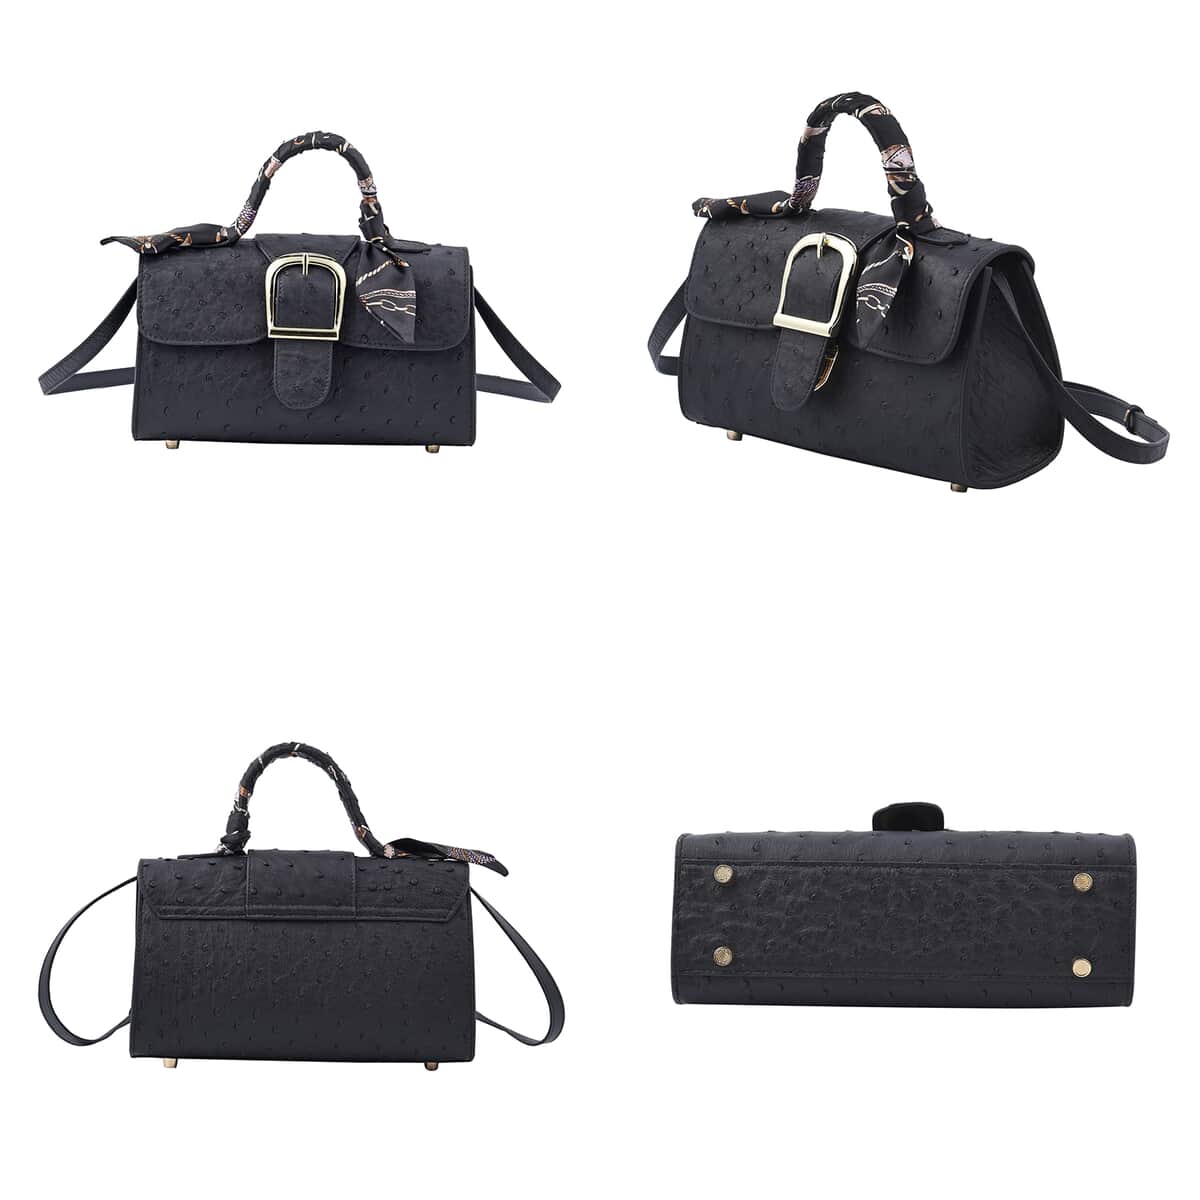 Black Ostrich Skin Textured Leather Crossbody Bag with Adjustable Shoulder Strap image number 4